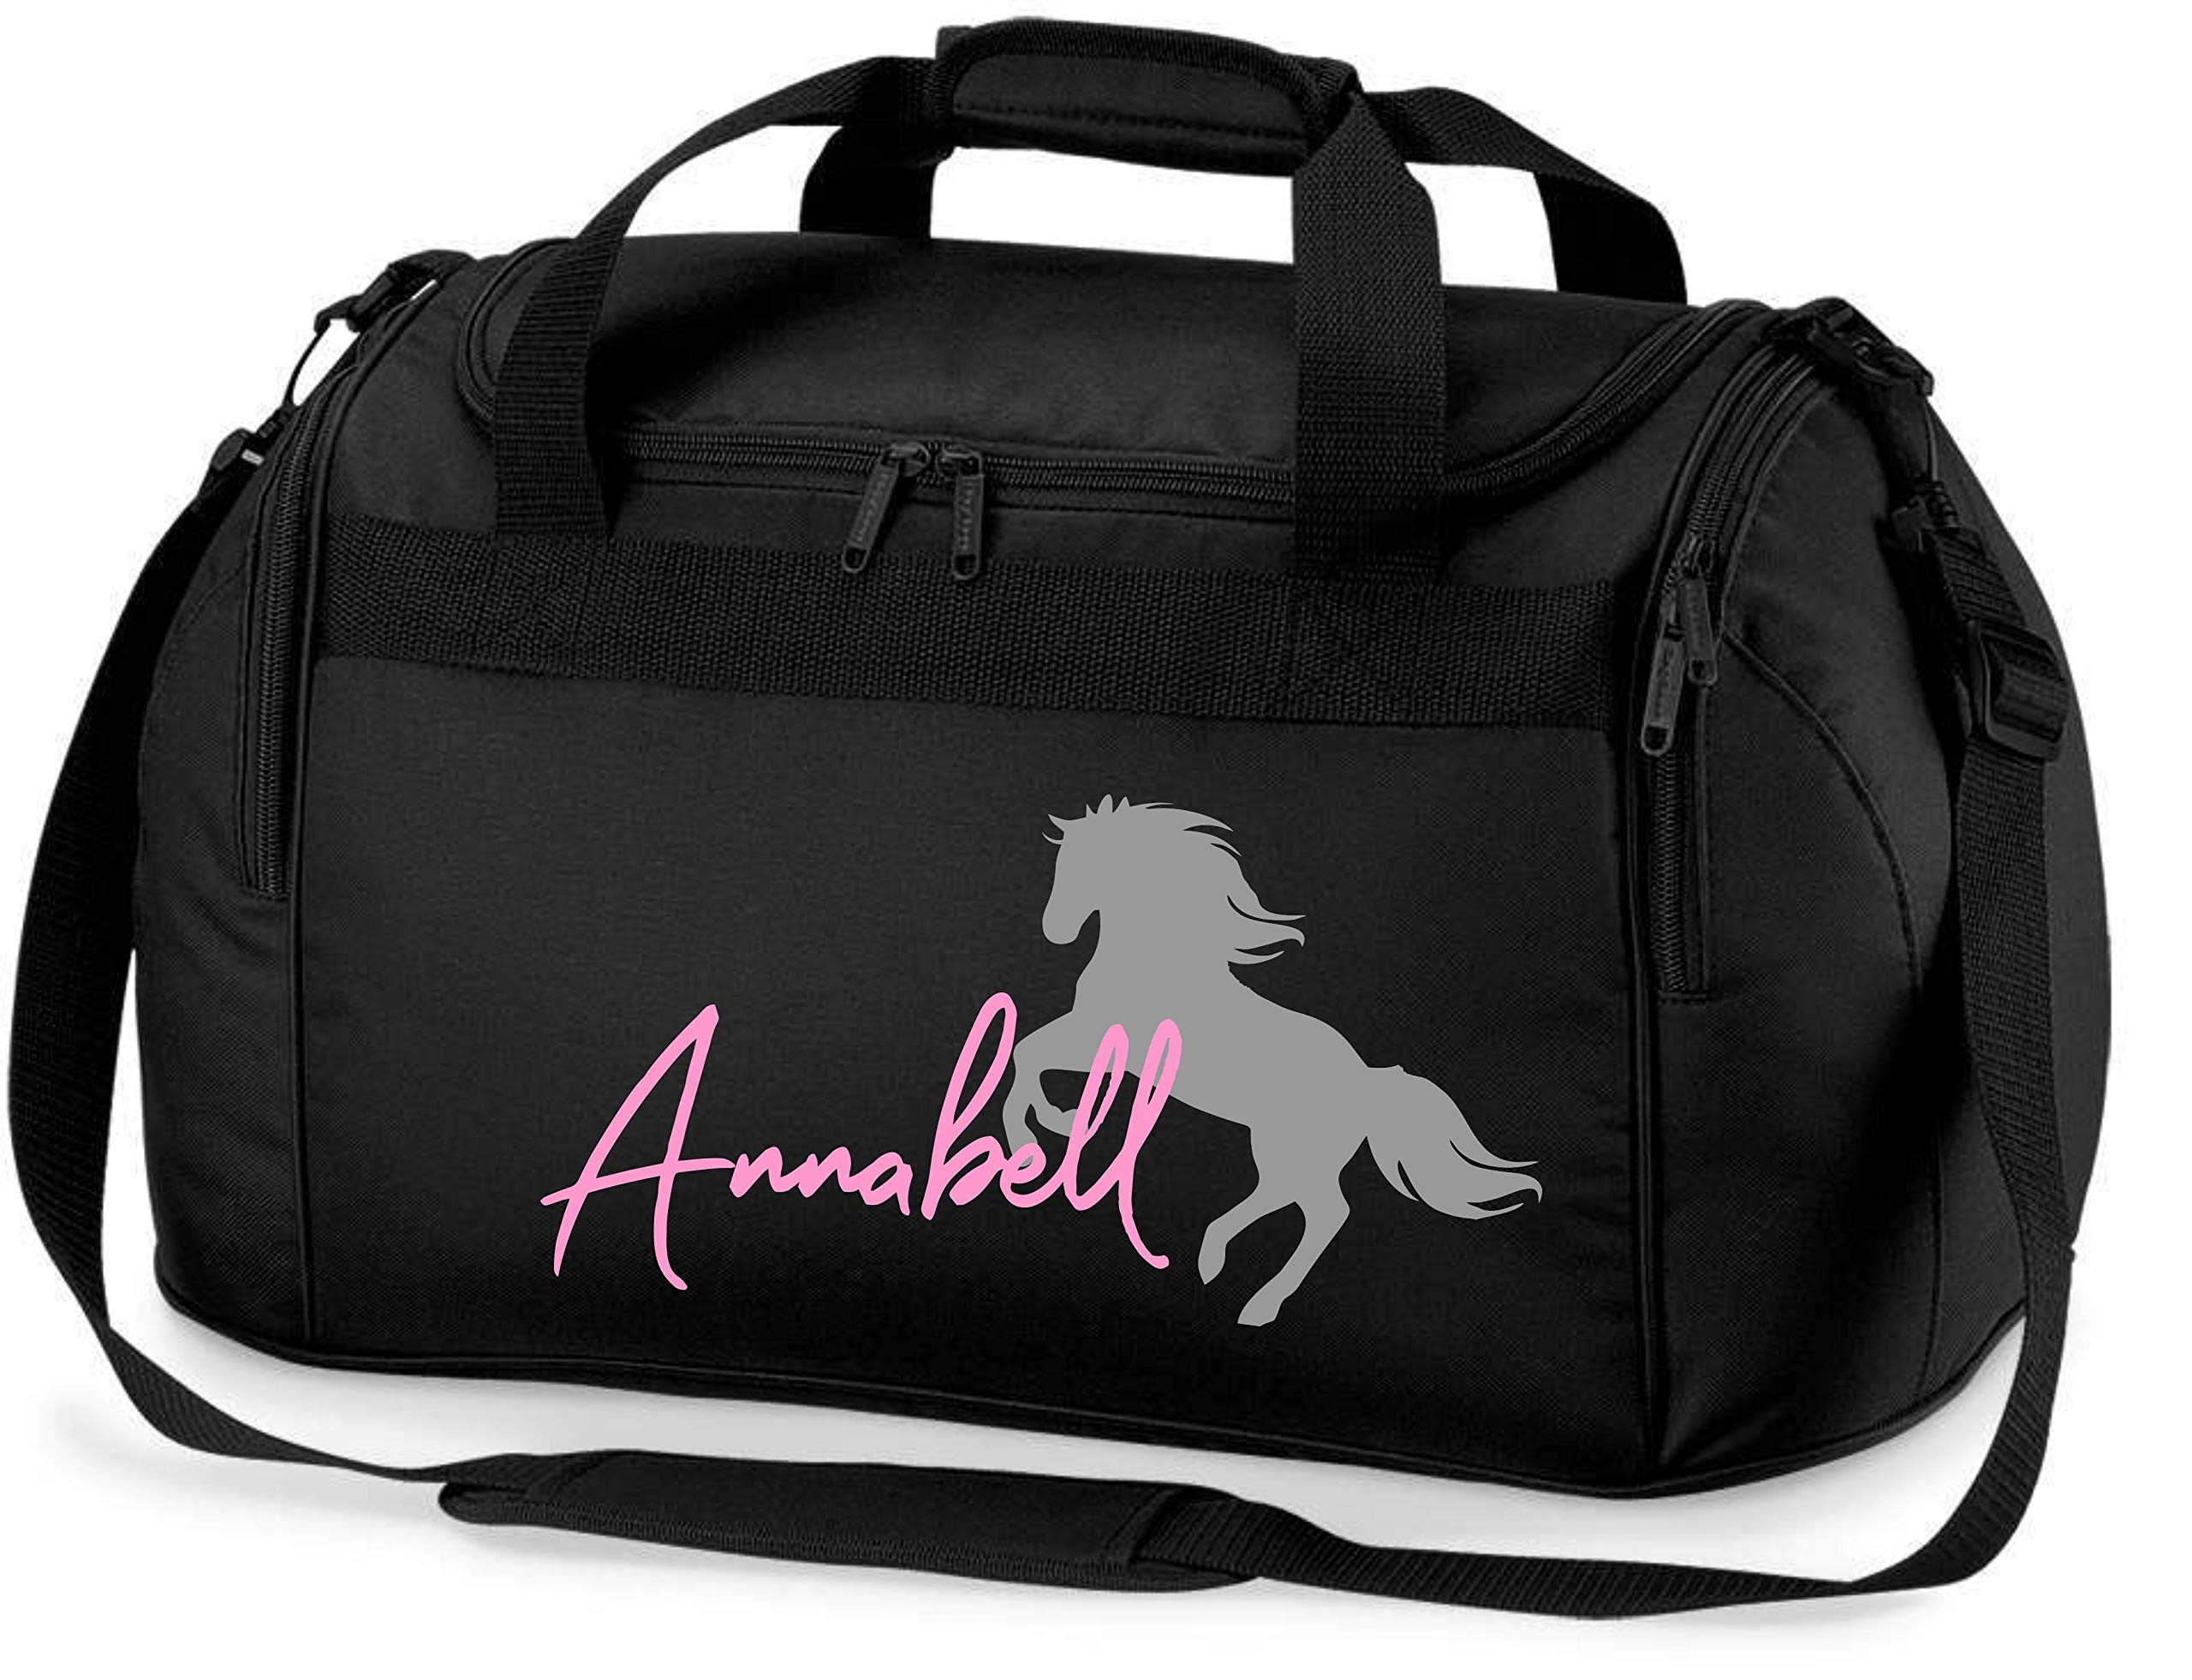 Reittasche mit Namensdruck personalisiert | Motiv aufsteigendes Pferd mit Name | Trage- und Sporttasche für Mädchen zum Reiten in vielen Farben verfügbar (schwarz)